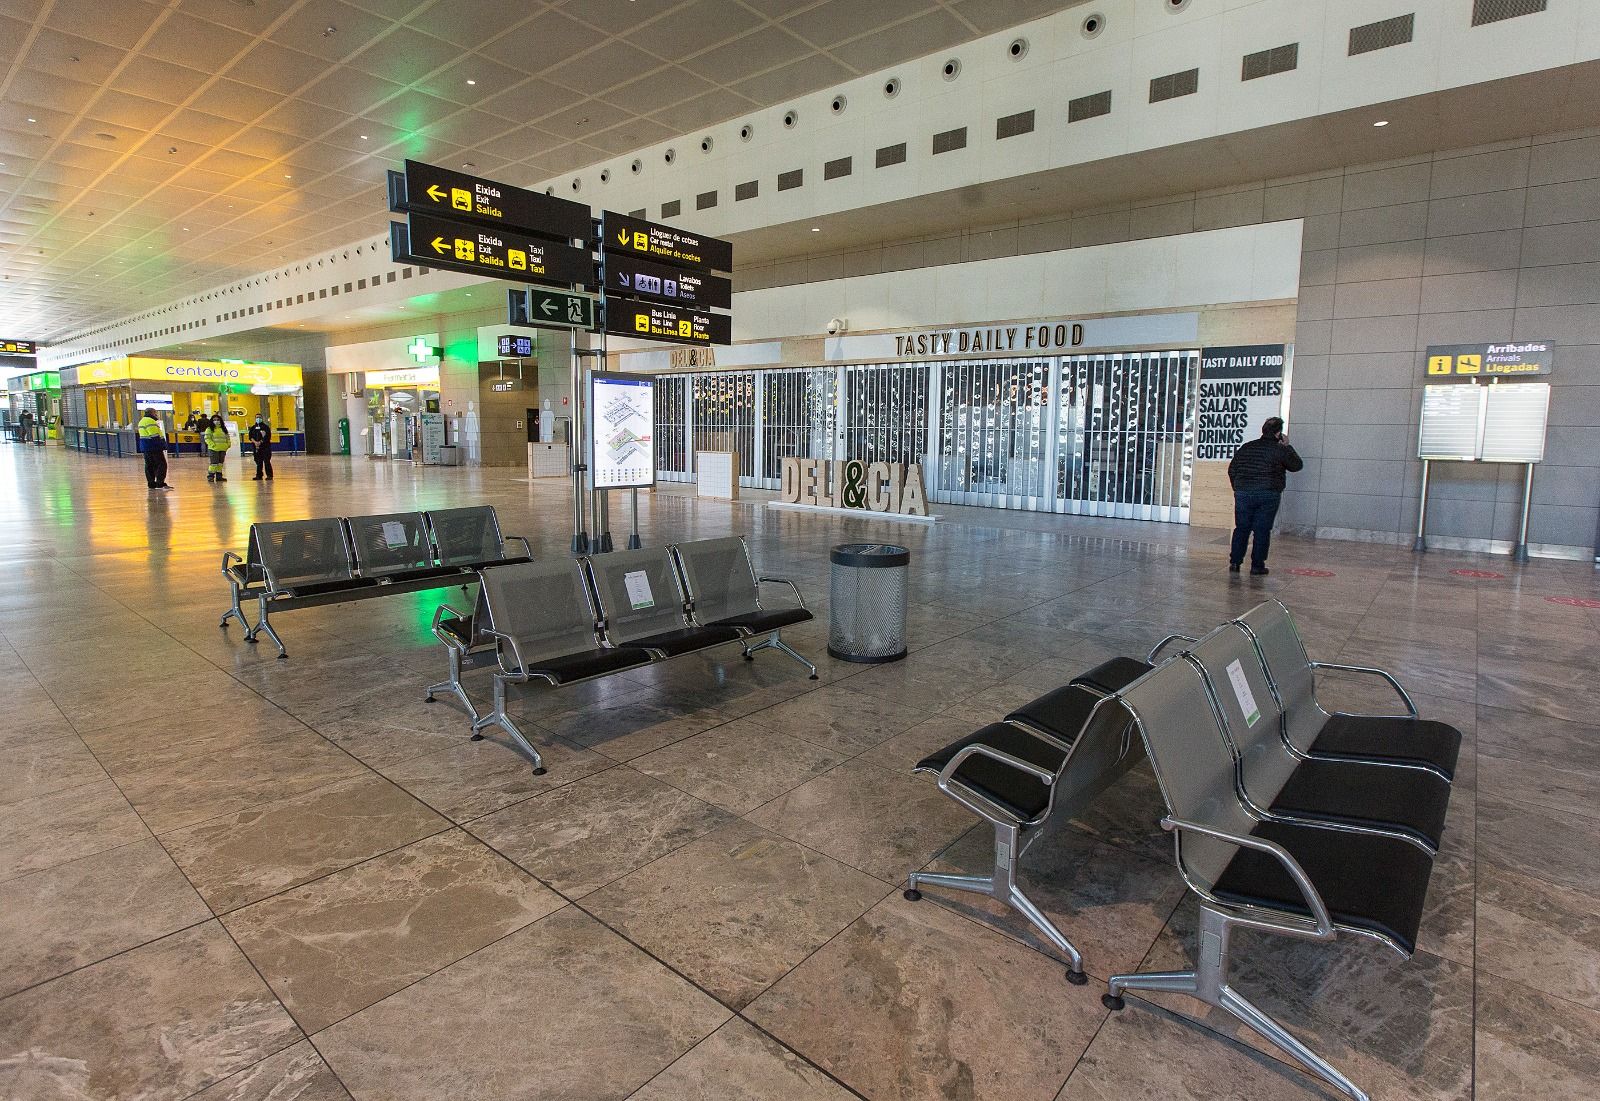 La tercera ola del covid devuelve al aeropuerto de Alicante a los tiempos del confinamiento de marzo